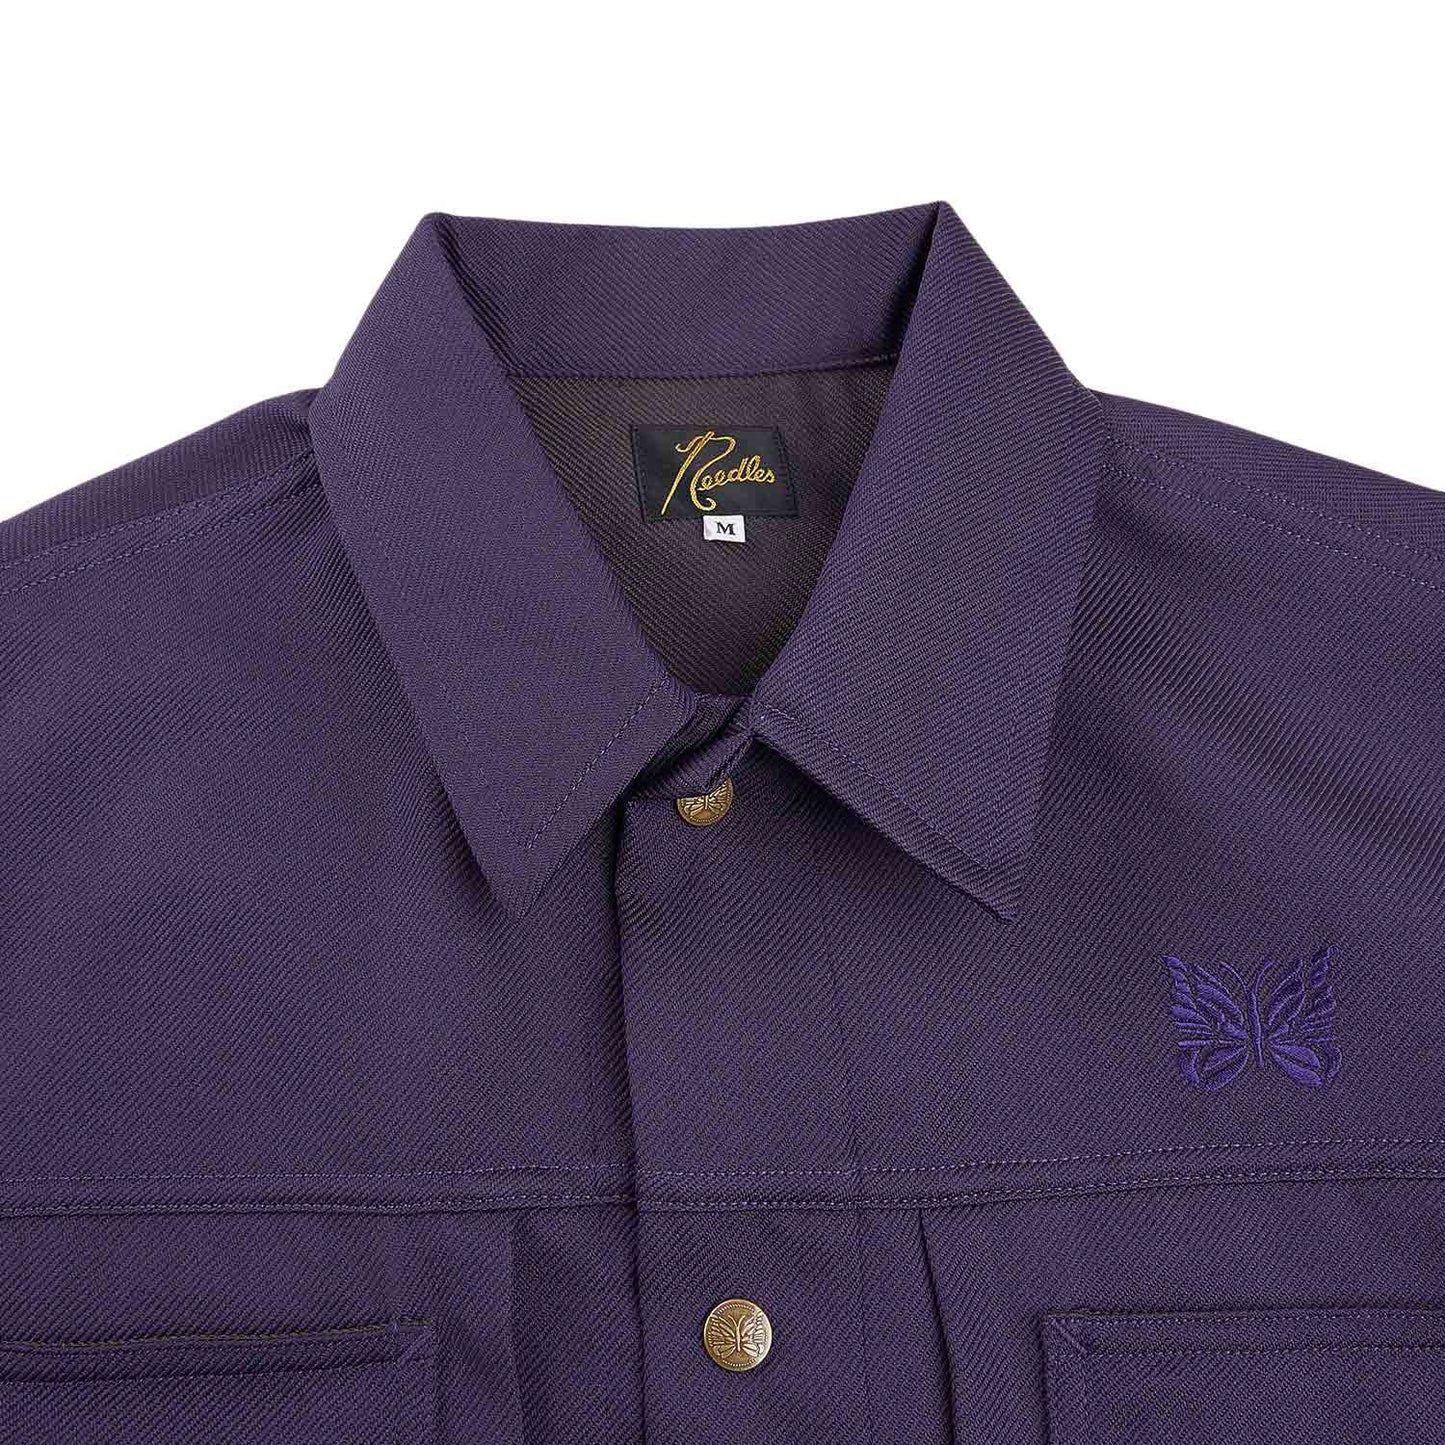 needles penny jean jacket (purple)